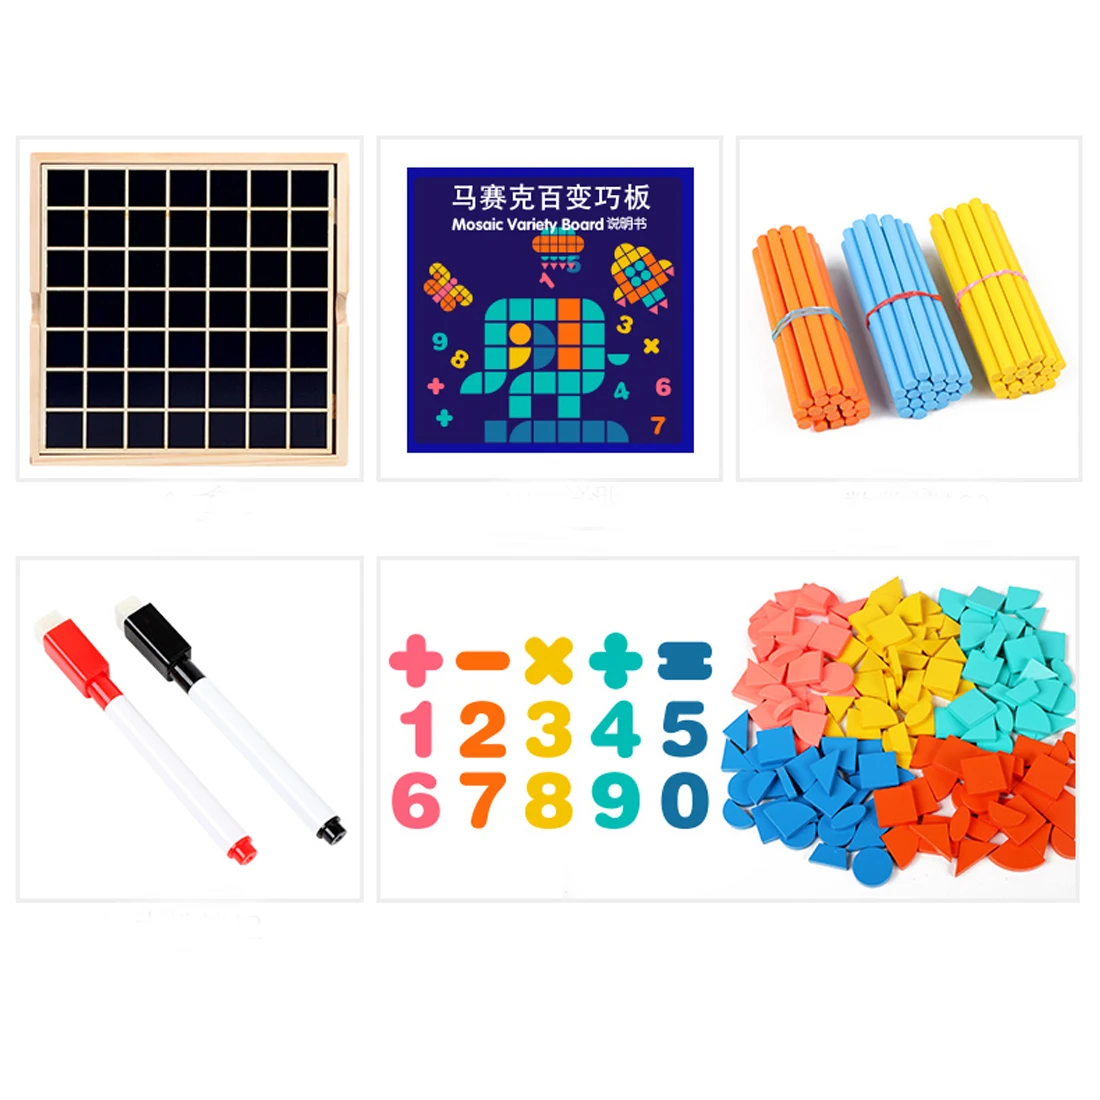 Мозаика разнообразие доска головоломка Танграм обучающая игрушка для детей раннего развития Игрушка Дети подарок